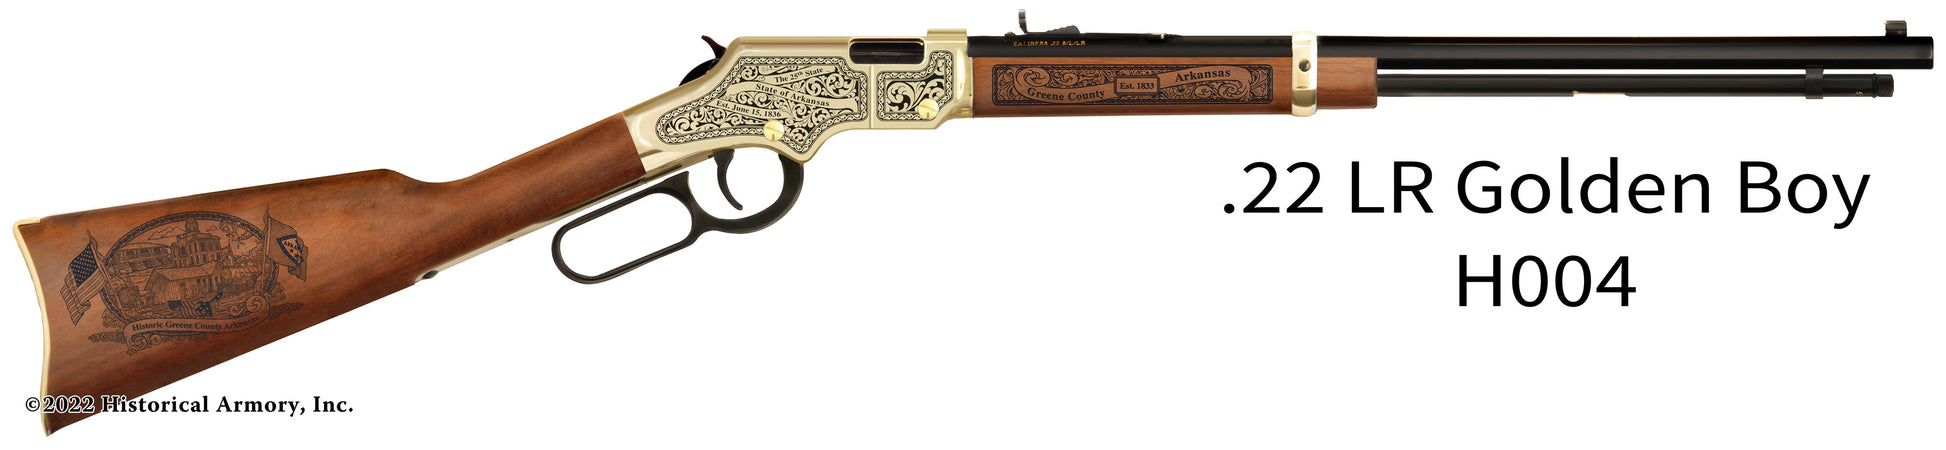 Greene County Arkansas Engraved Henry Golden Boy Rifle